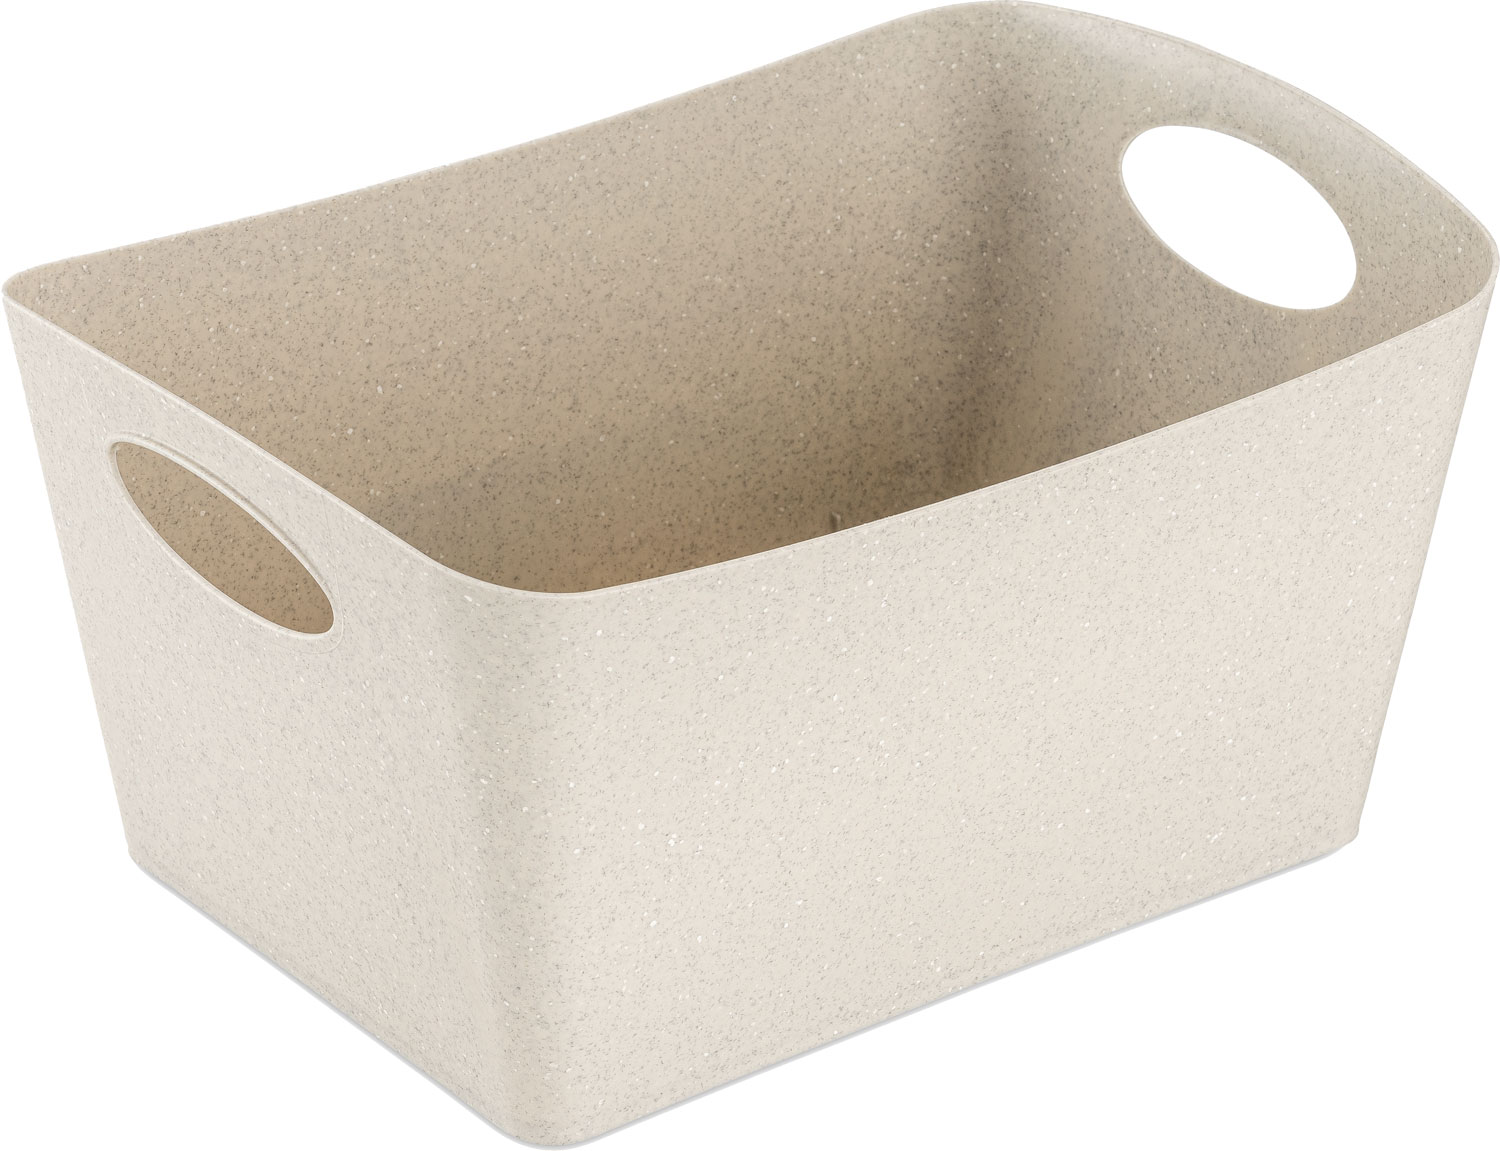 Koziol BOXXX M Aufbewahrungsbox recycled desert sand 3,5 Liter beige